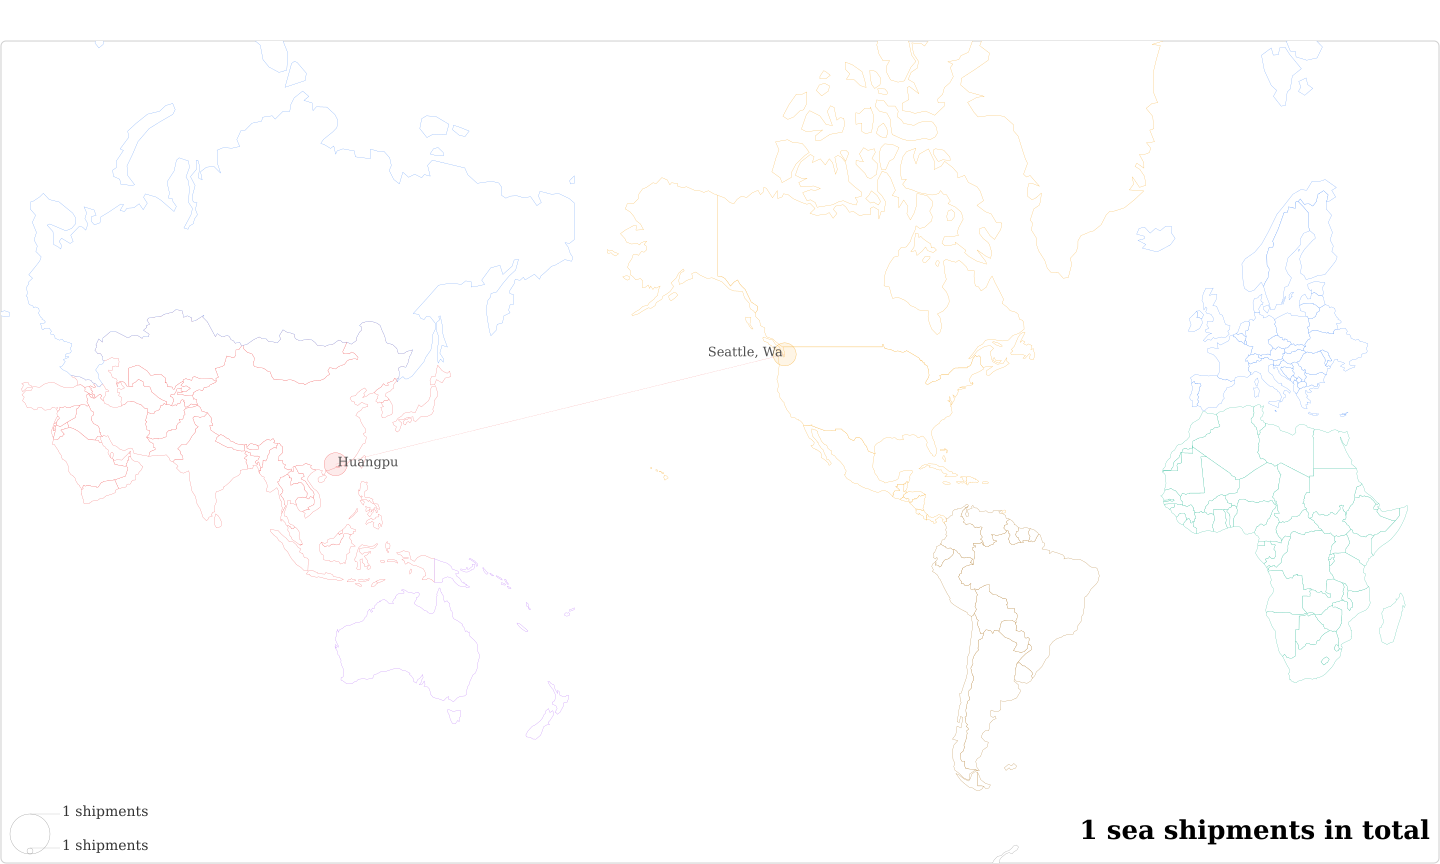 Les Vergers De La Colline's Imports Per Country Map